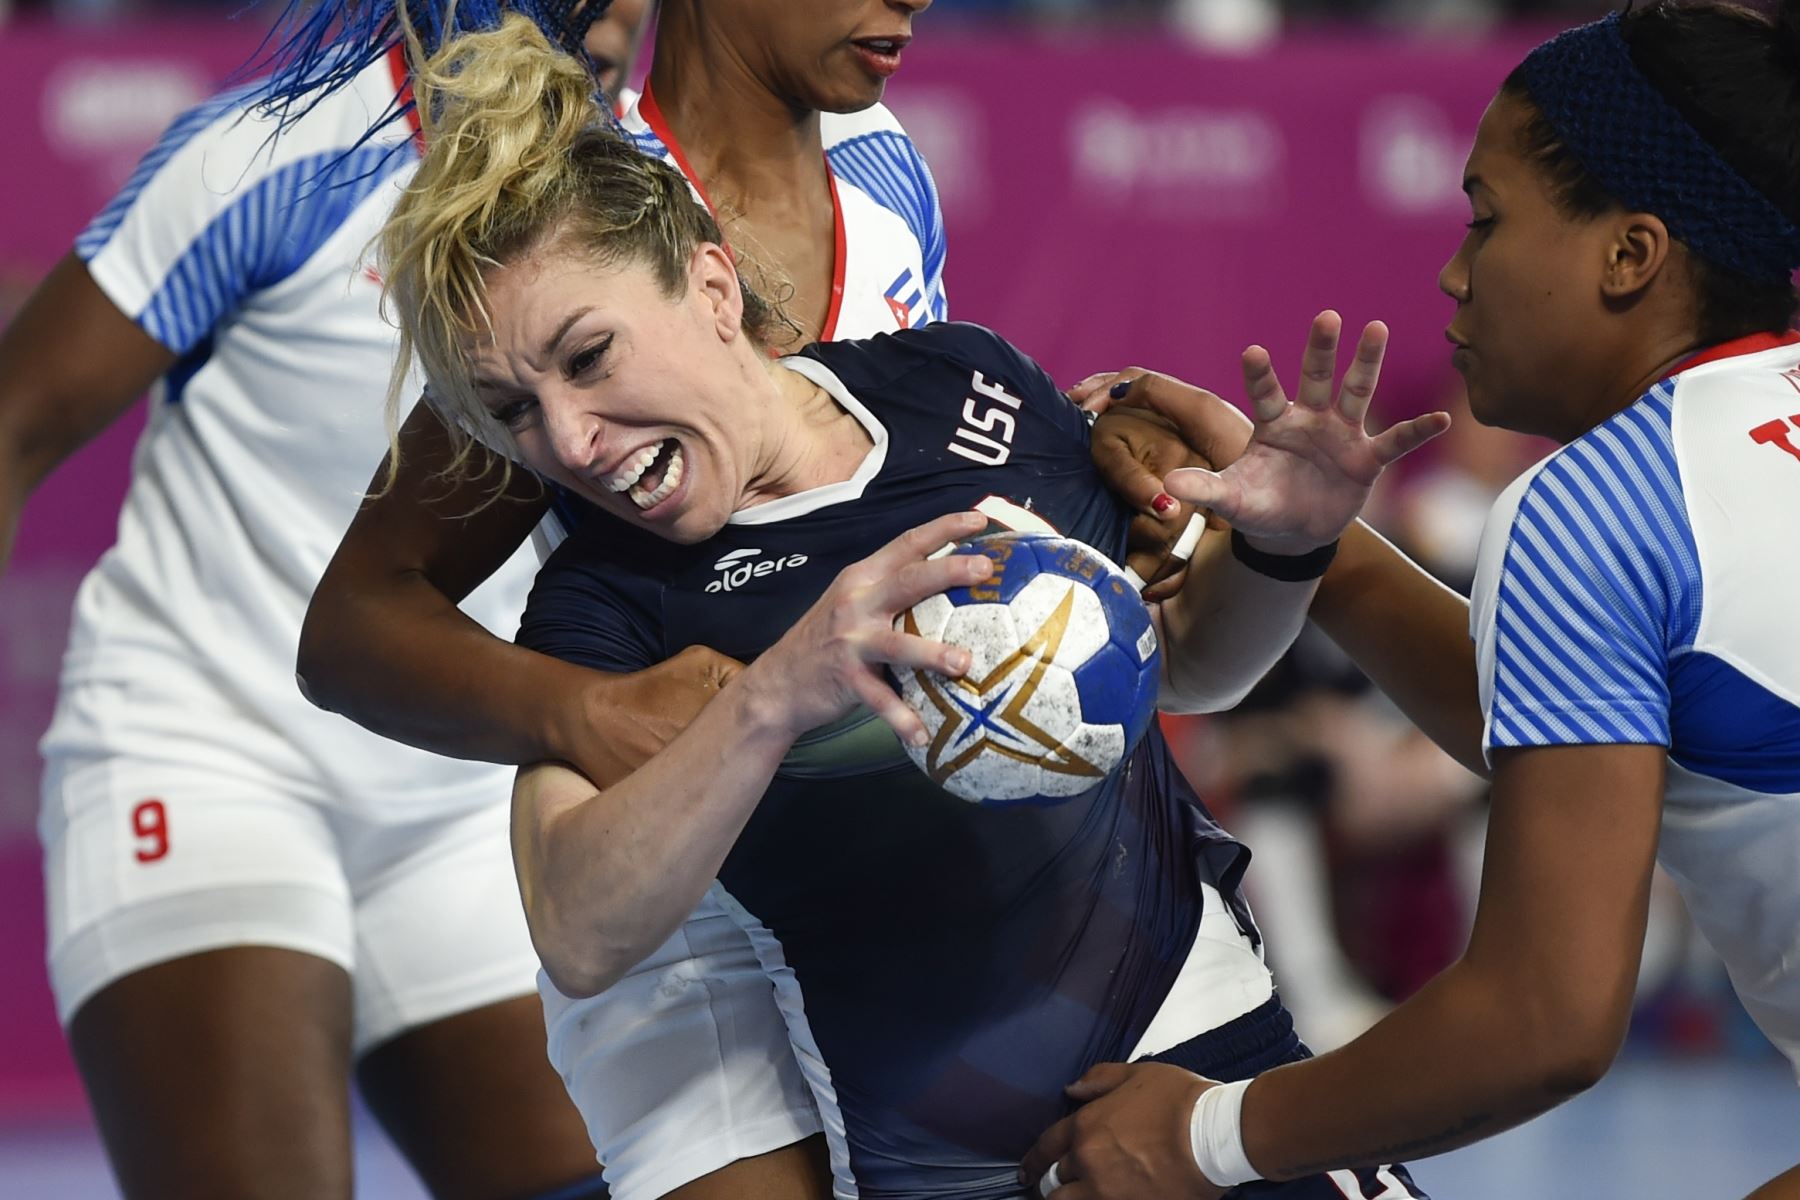 La estadounidense Sarah Gascon (C) está marcada por jugadoras cubanas durante el partido por la medalla de bronce de balonmano femenino durante los Juegos Panamericanos de Lima 2019.  Cuba ganó la medalla de bronce. Foto: AFP